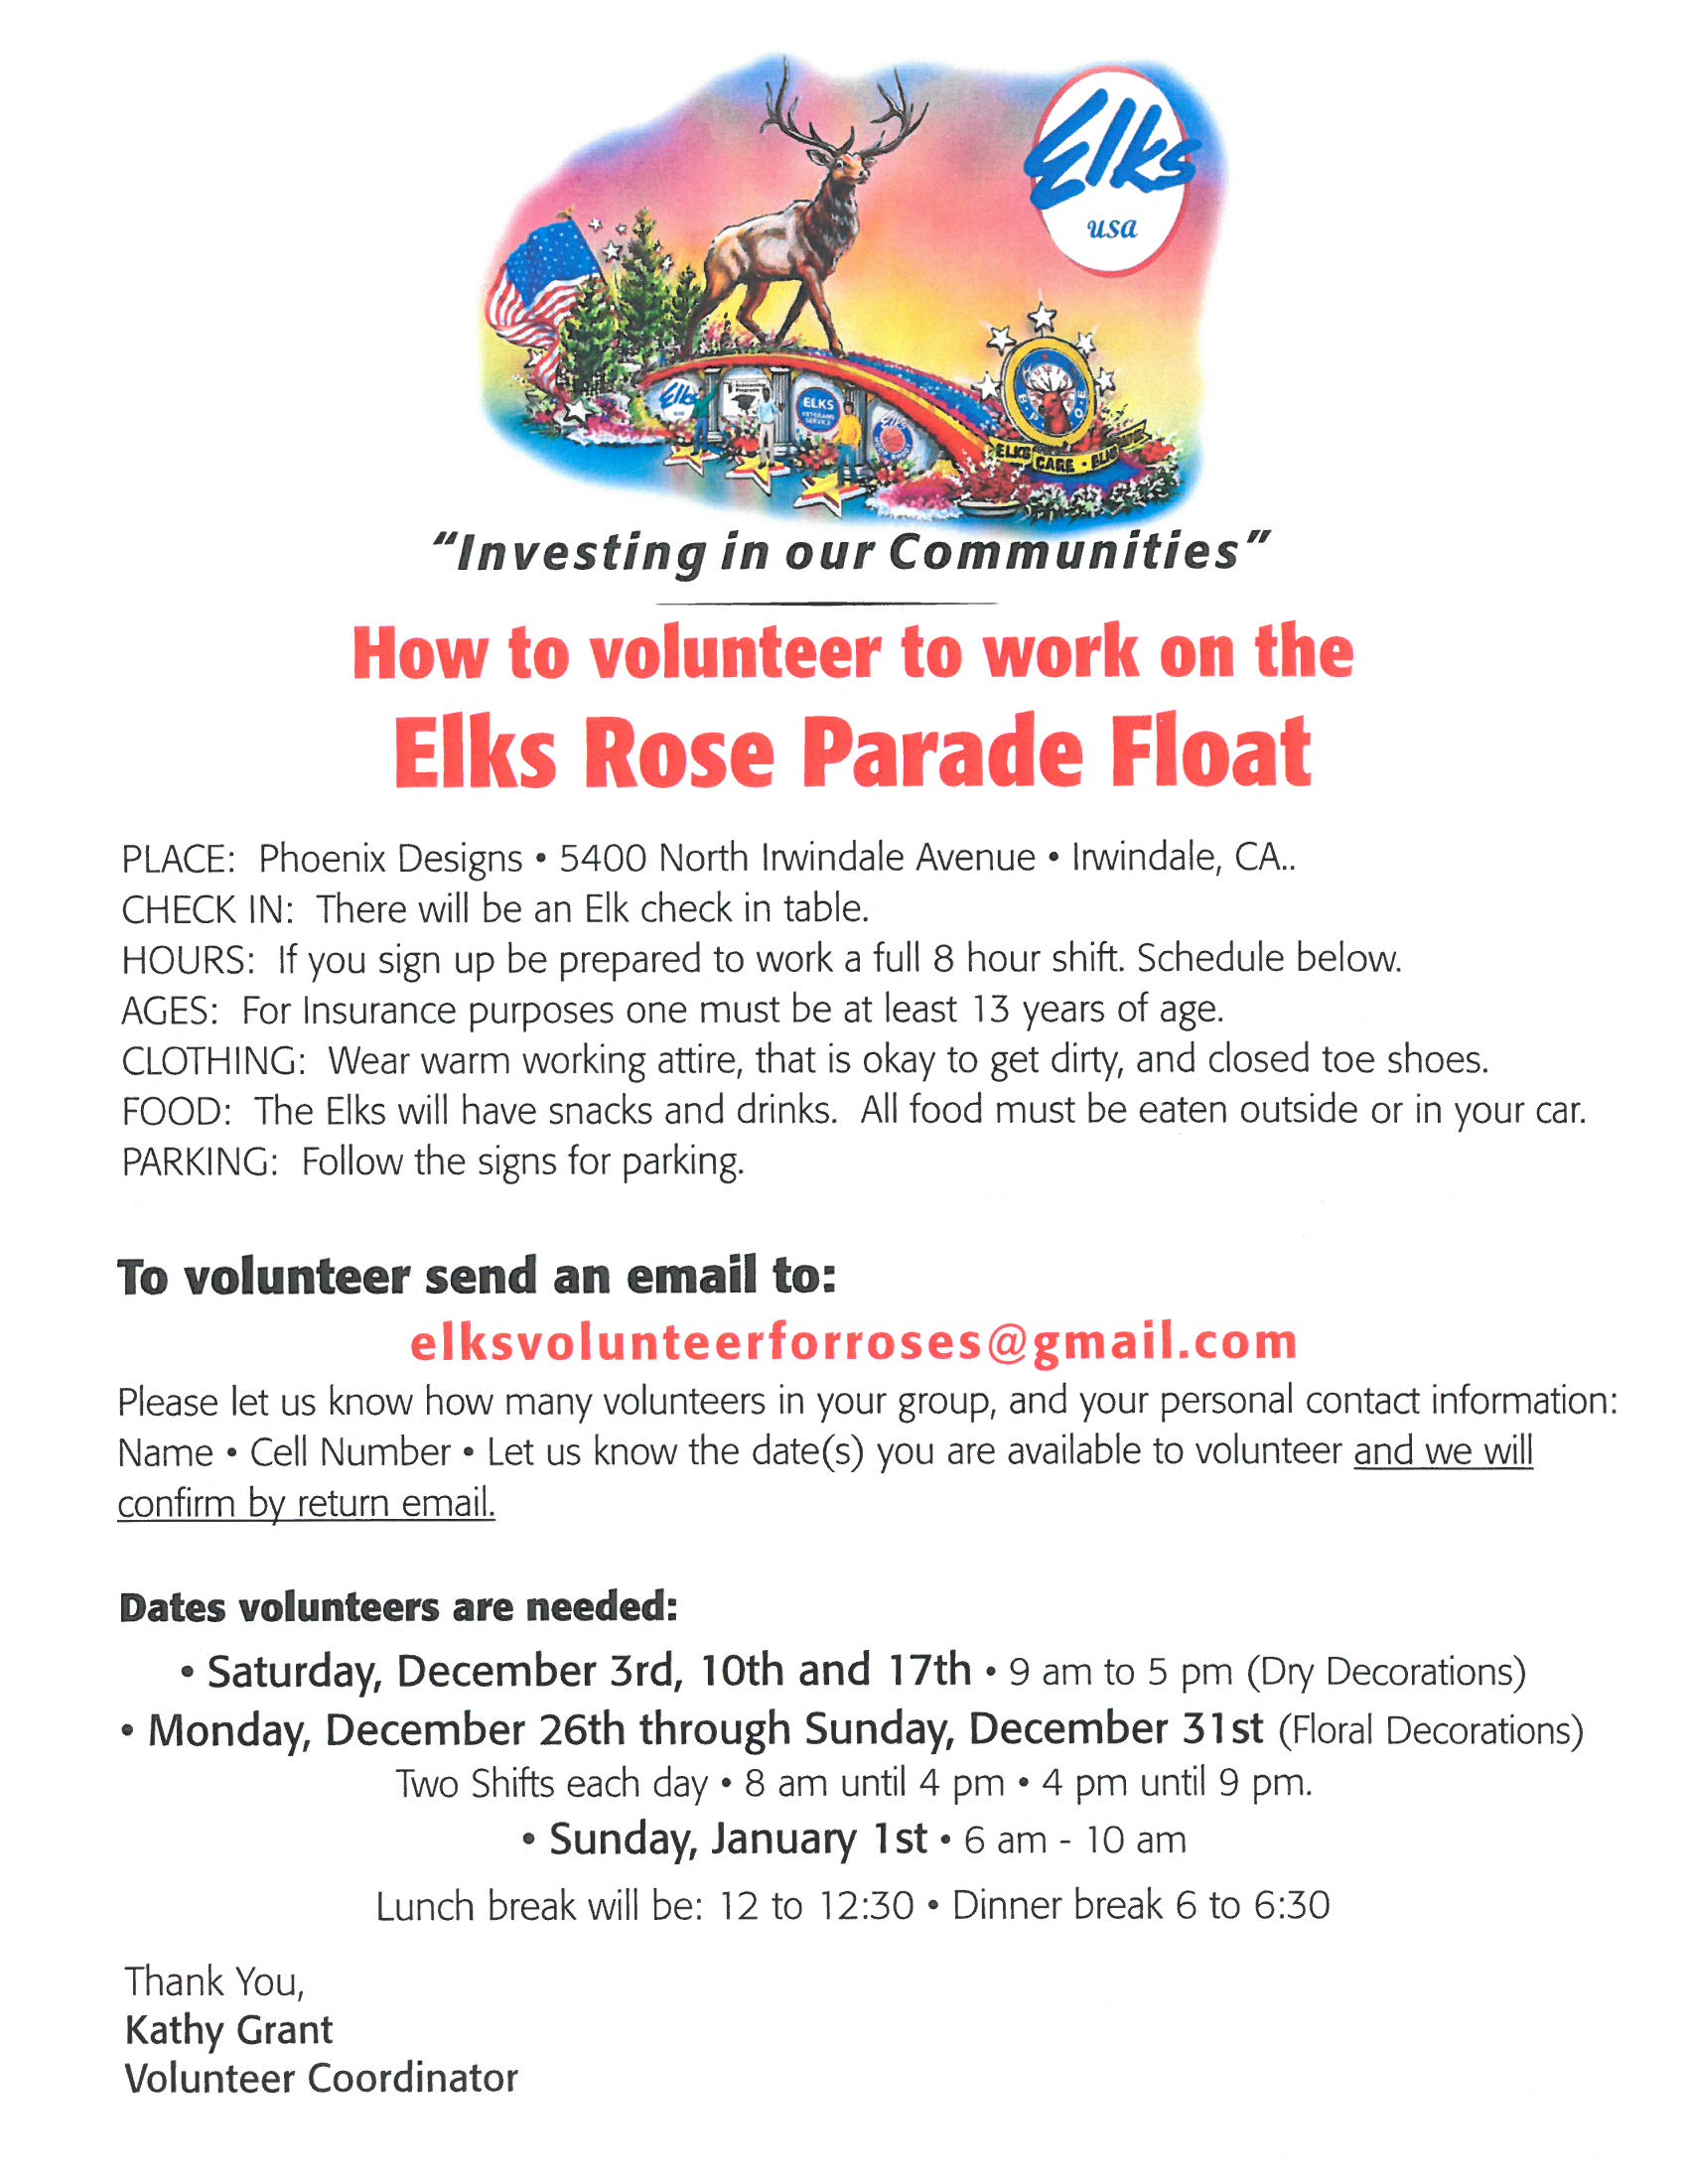 Volunteer for the Elks Rose Parade Float Thousand Oaks Elks Lodge 2477